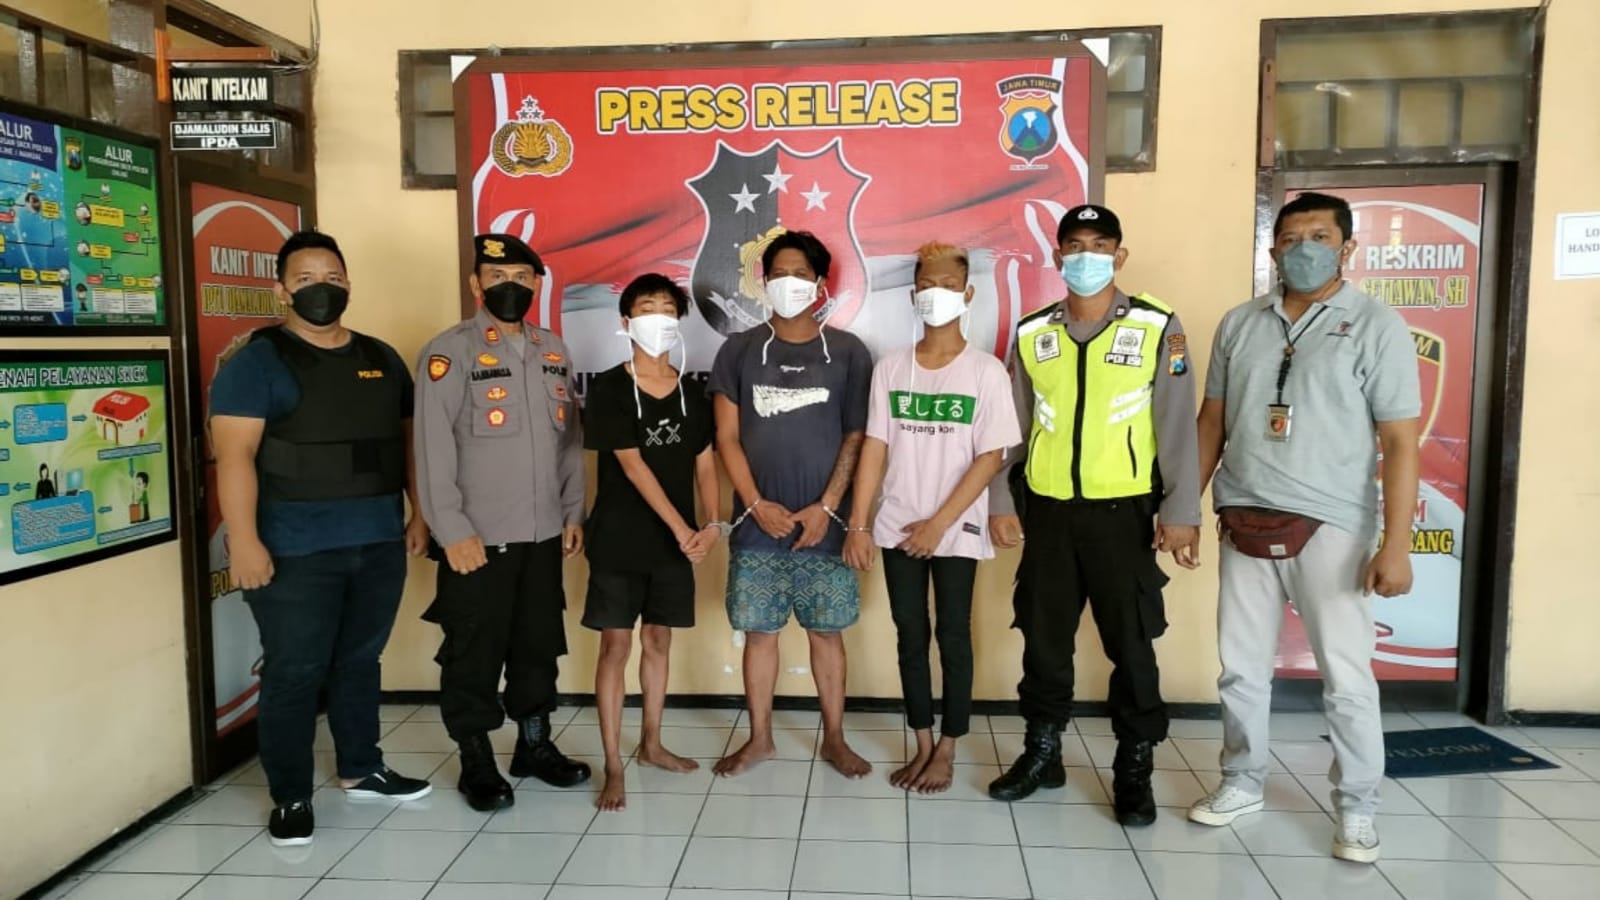 Bapak Anak dan Rekannya Masuk Penjara Karena Keroyok Pria di Jombang